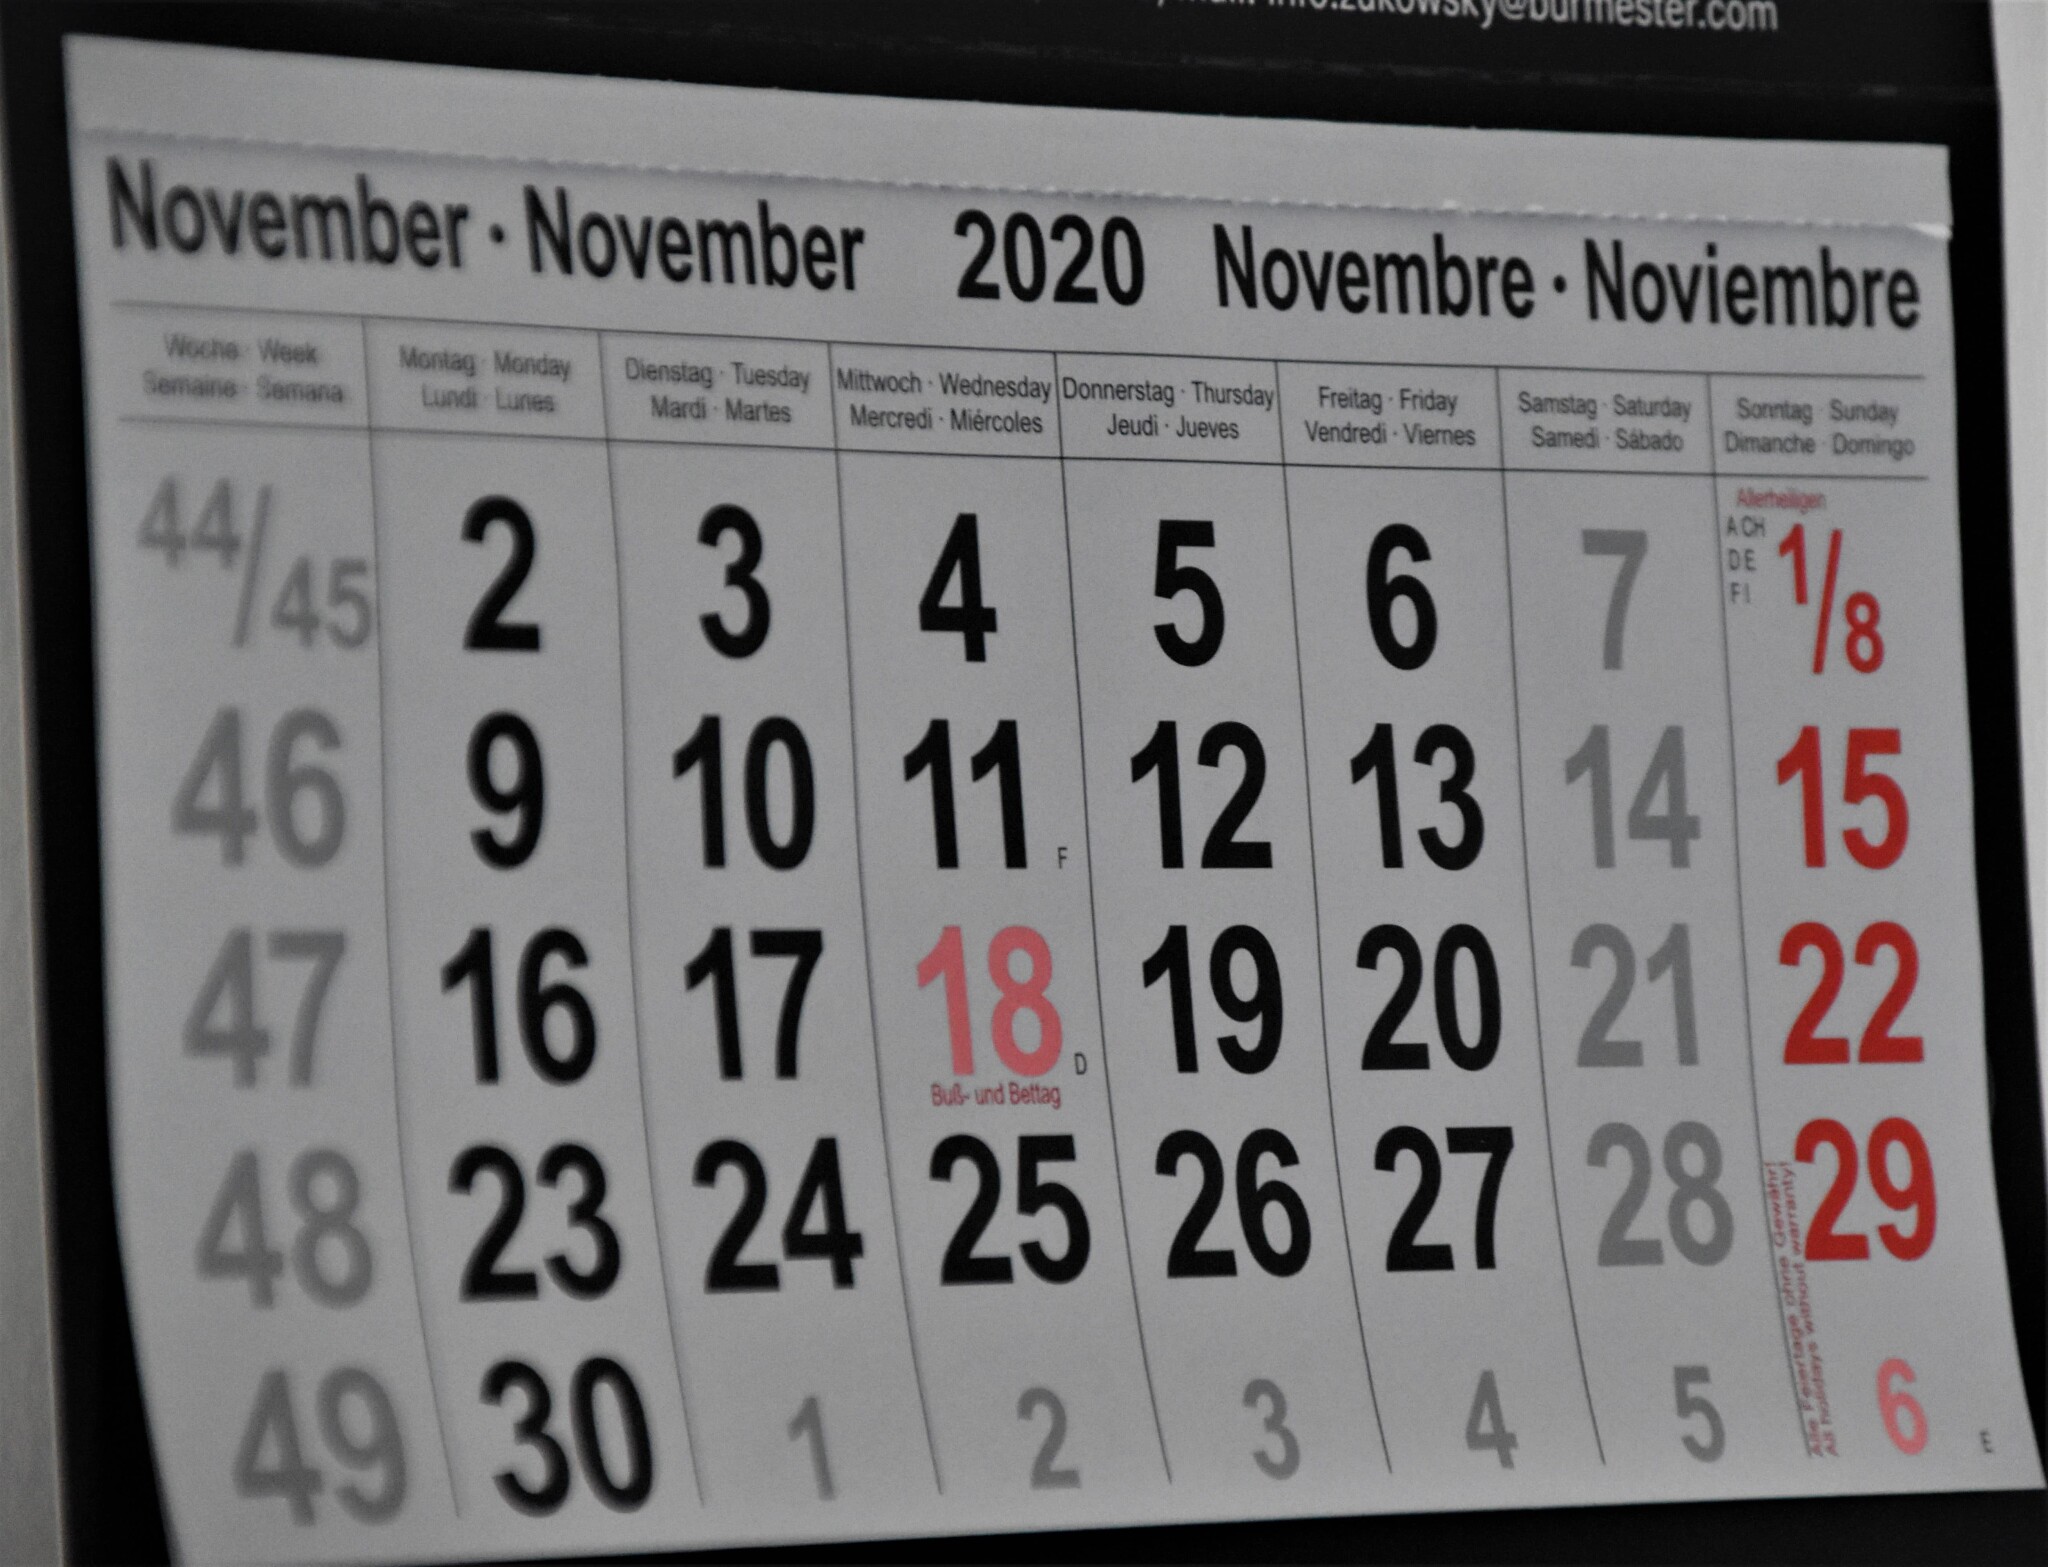 Pět dní dlouhý víkend? Odbory navrhují, aby se o dva dny prodloužil svátek 17. listopadu